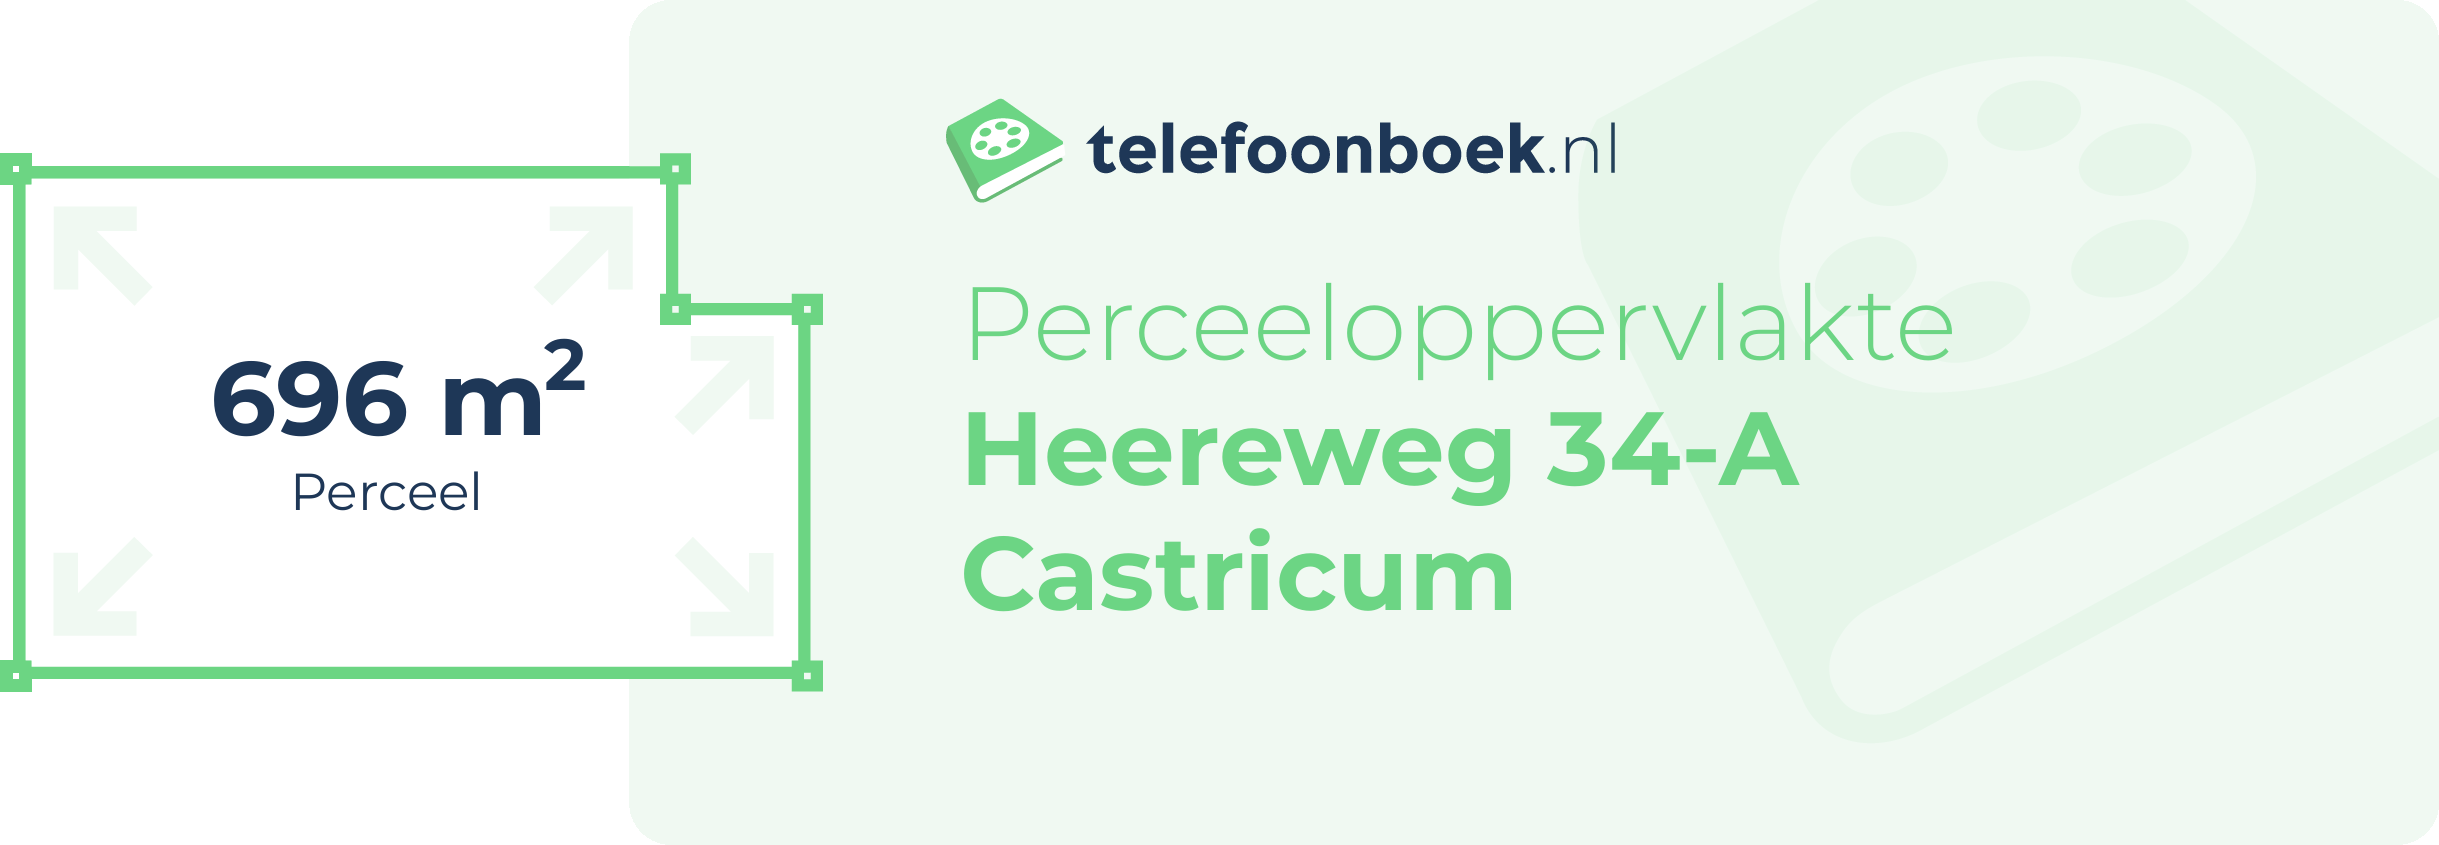 Perceeloppervlakte Heereweg 34-A Castricum